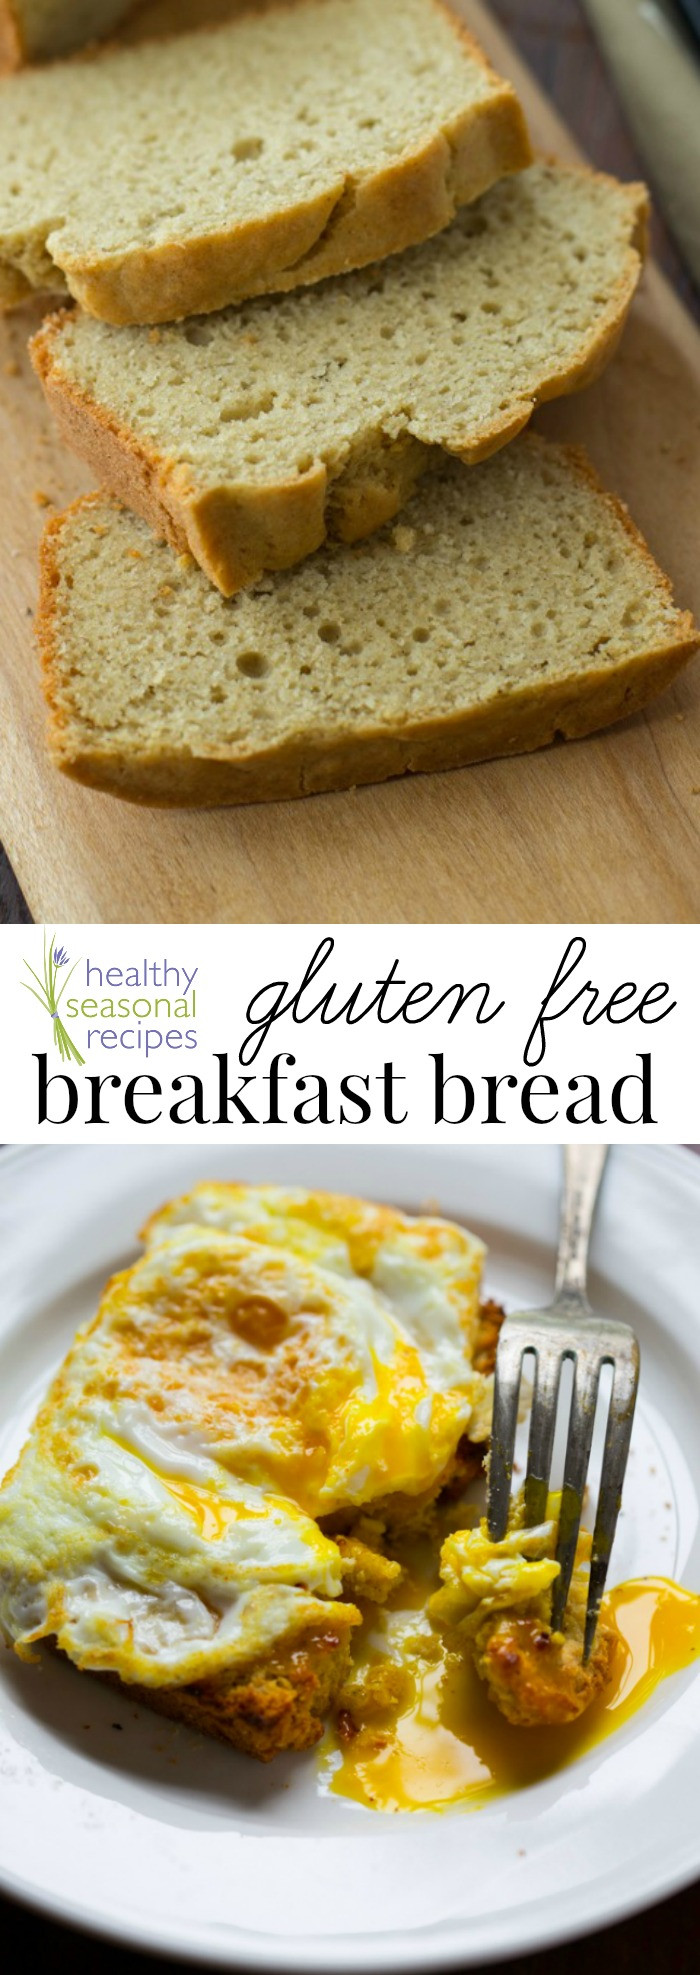 Healthy Breakfast Bread Recipes
 gluten free breakfast bread Healthy Seasonal Recipes